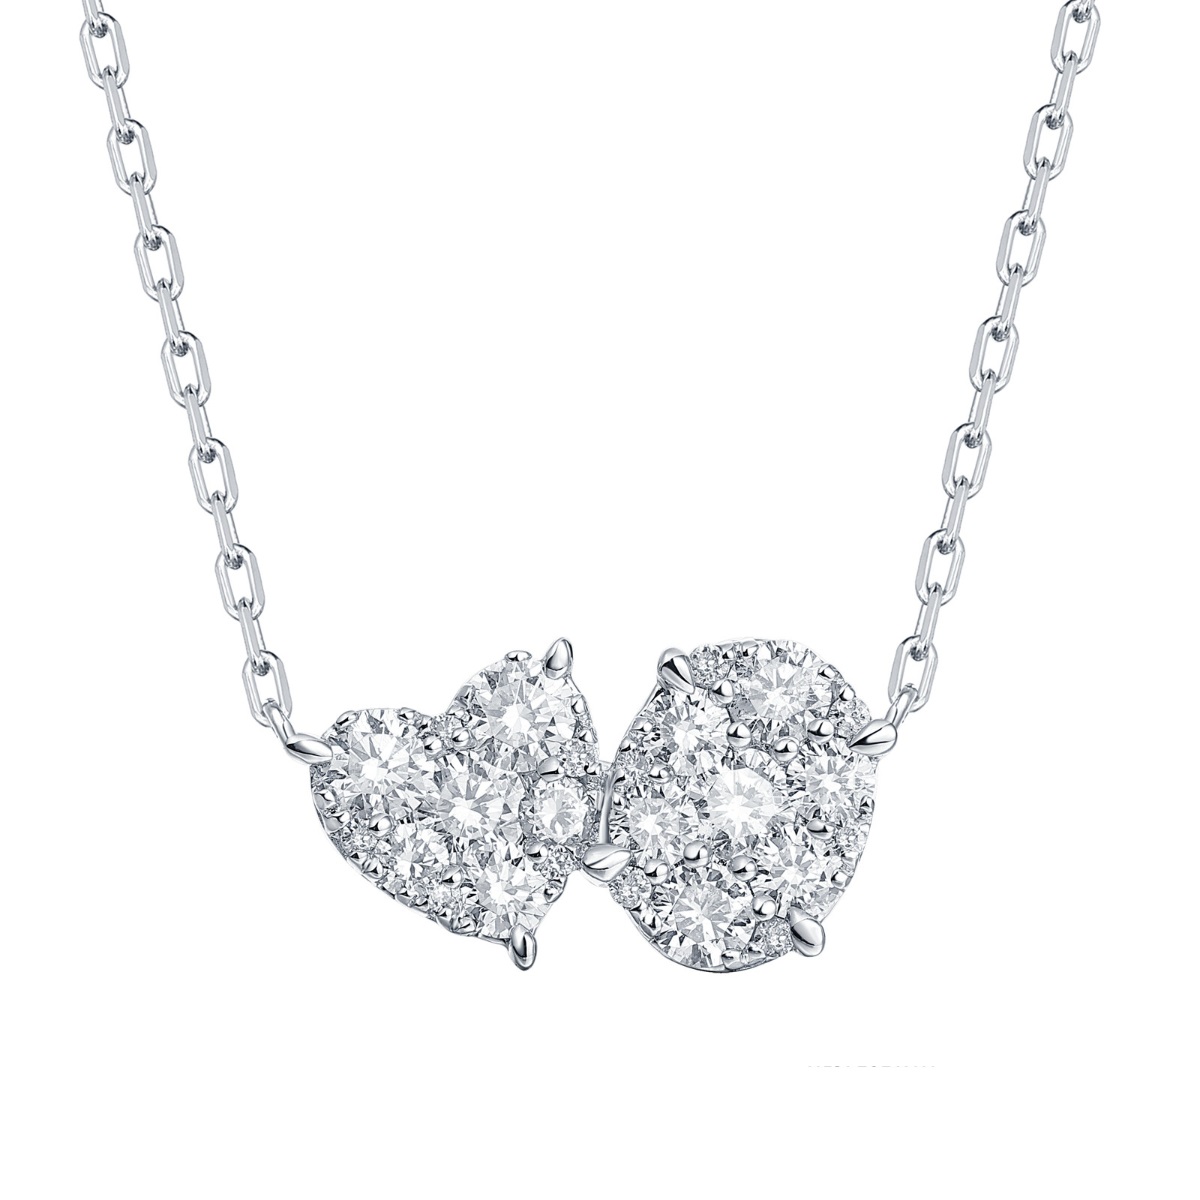 NL37161WHT – 18K White Gold Diamond Necklace, 0.86 TCW